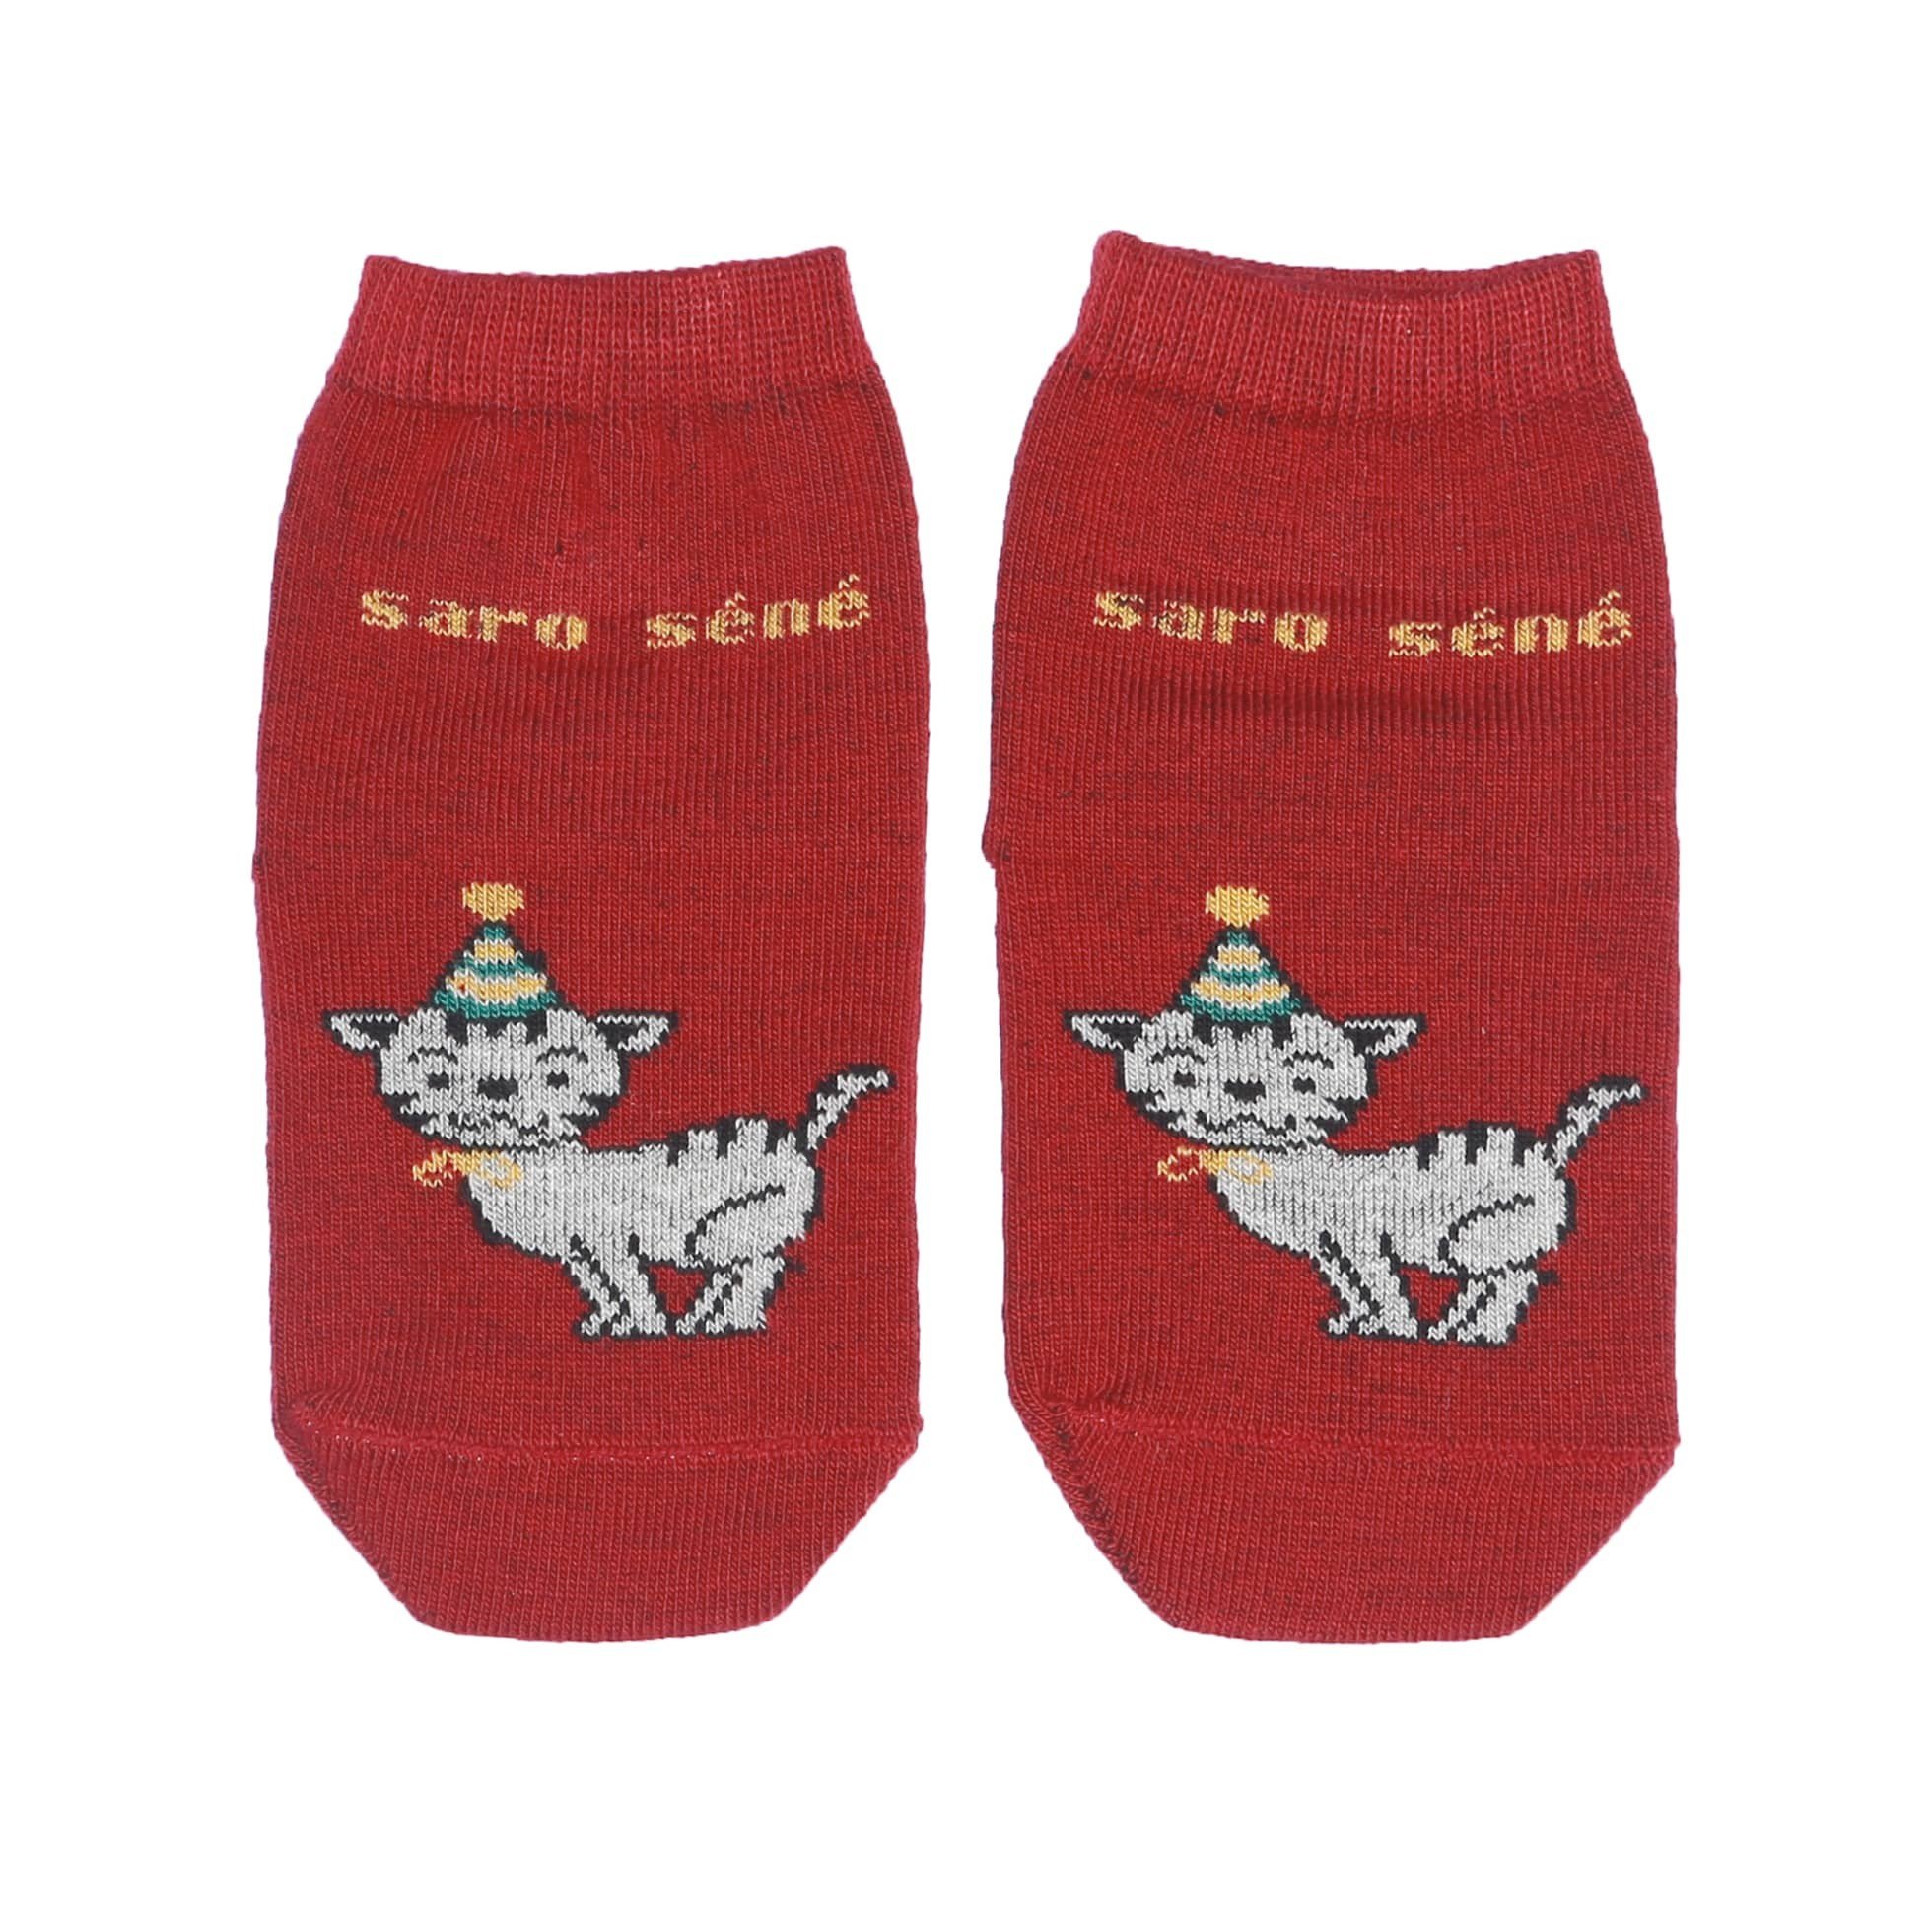 Saro Sene 
Babies Socks